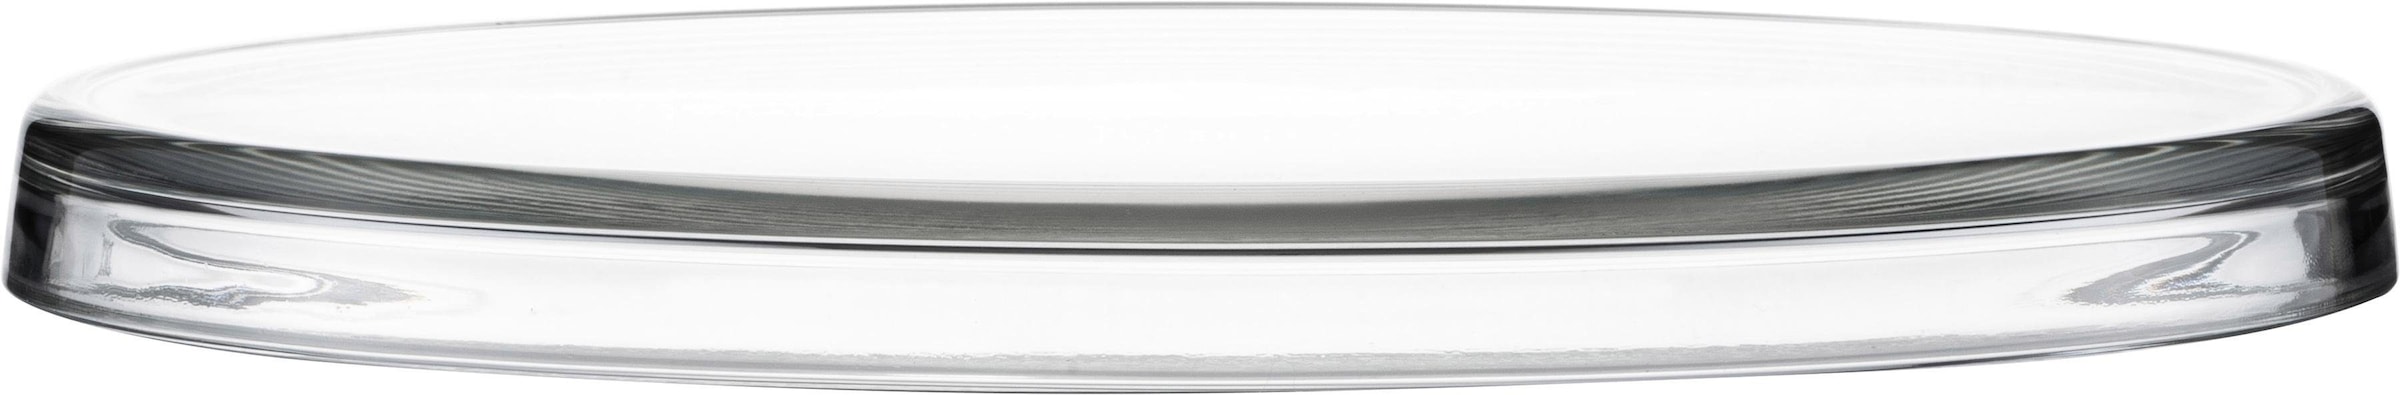 Eisch Tortenplatte »Tortenplatte 301/31 kristall«, satiniertes Kristallglas, Ø 31 cm